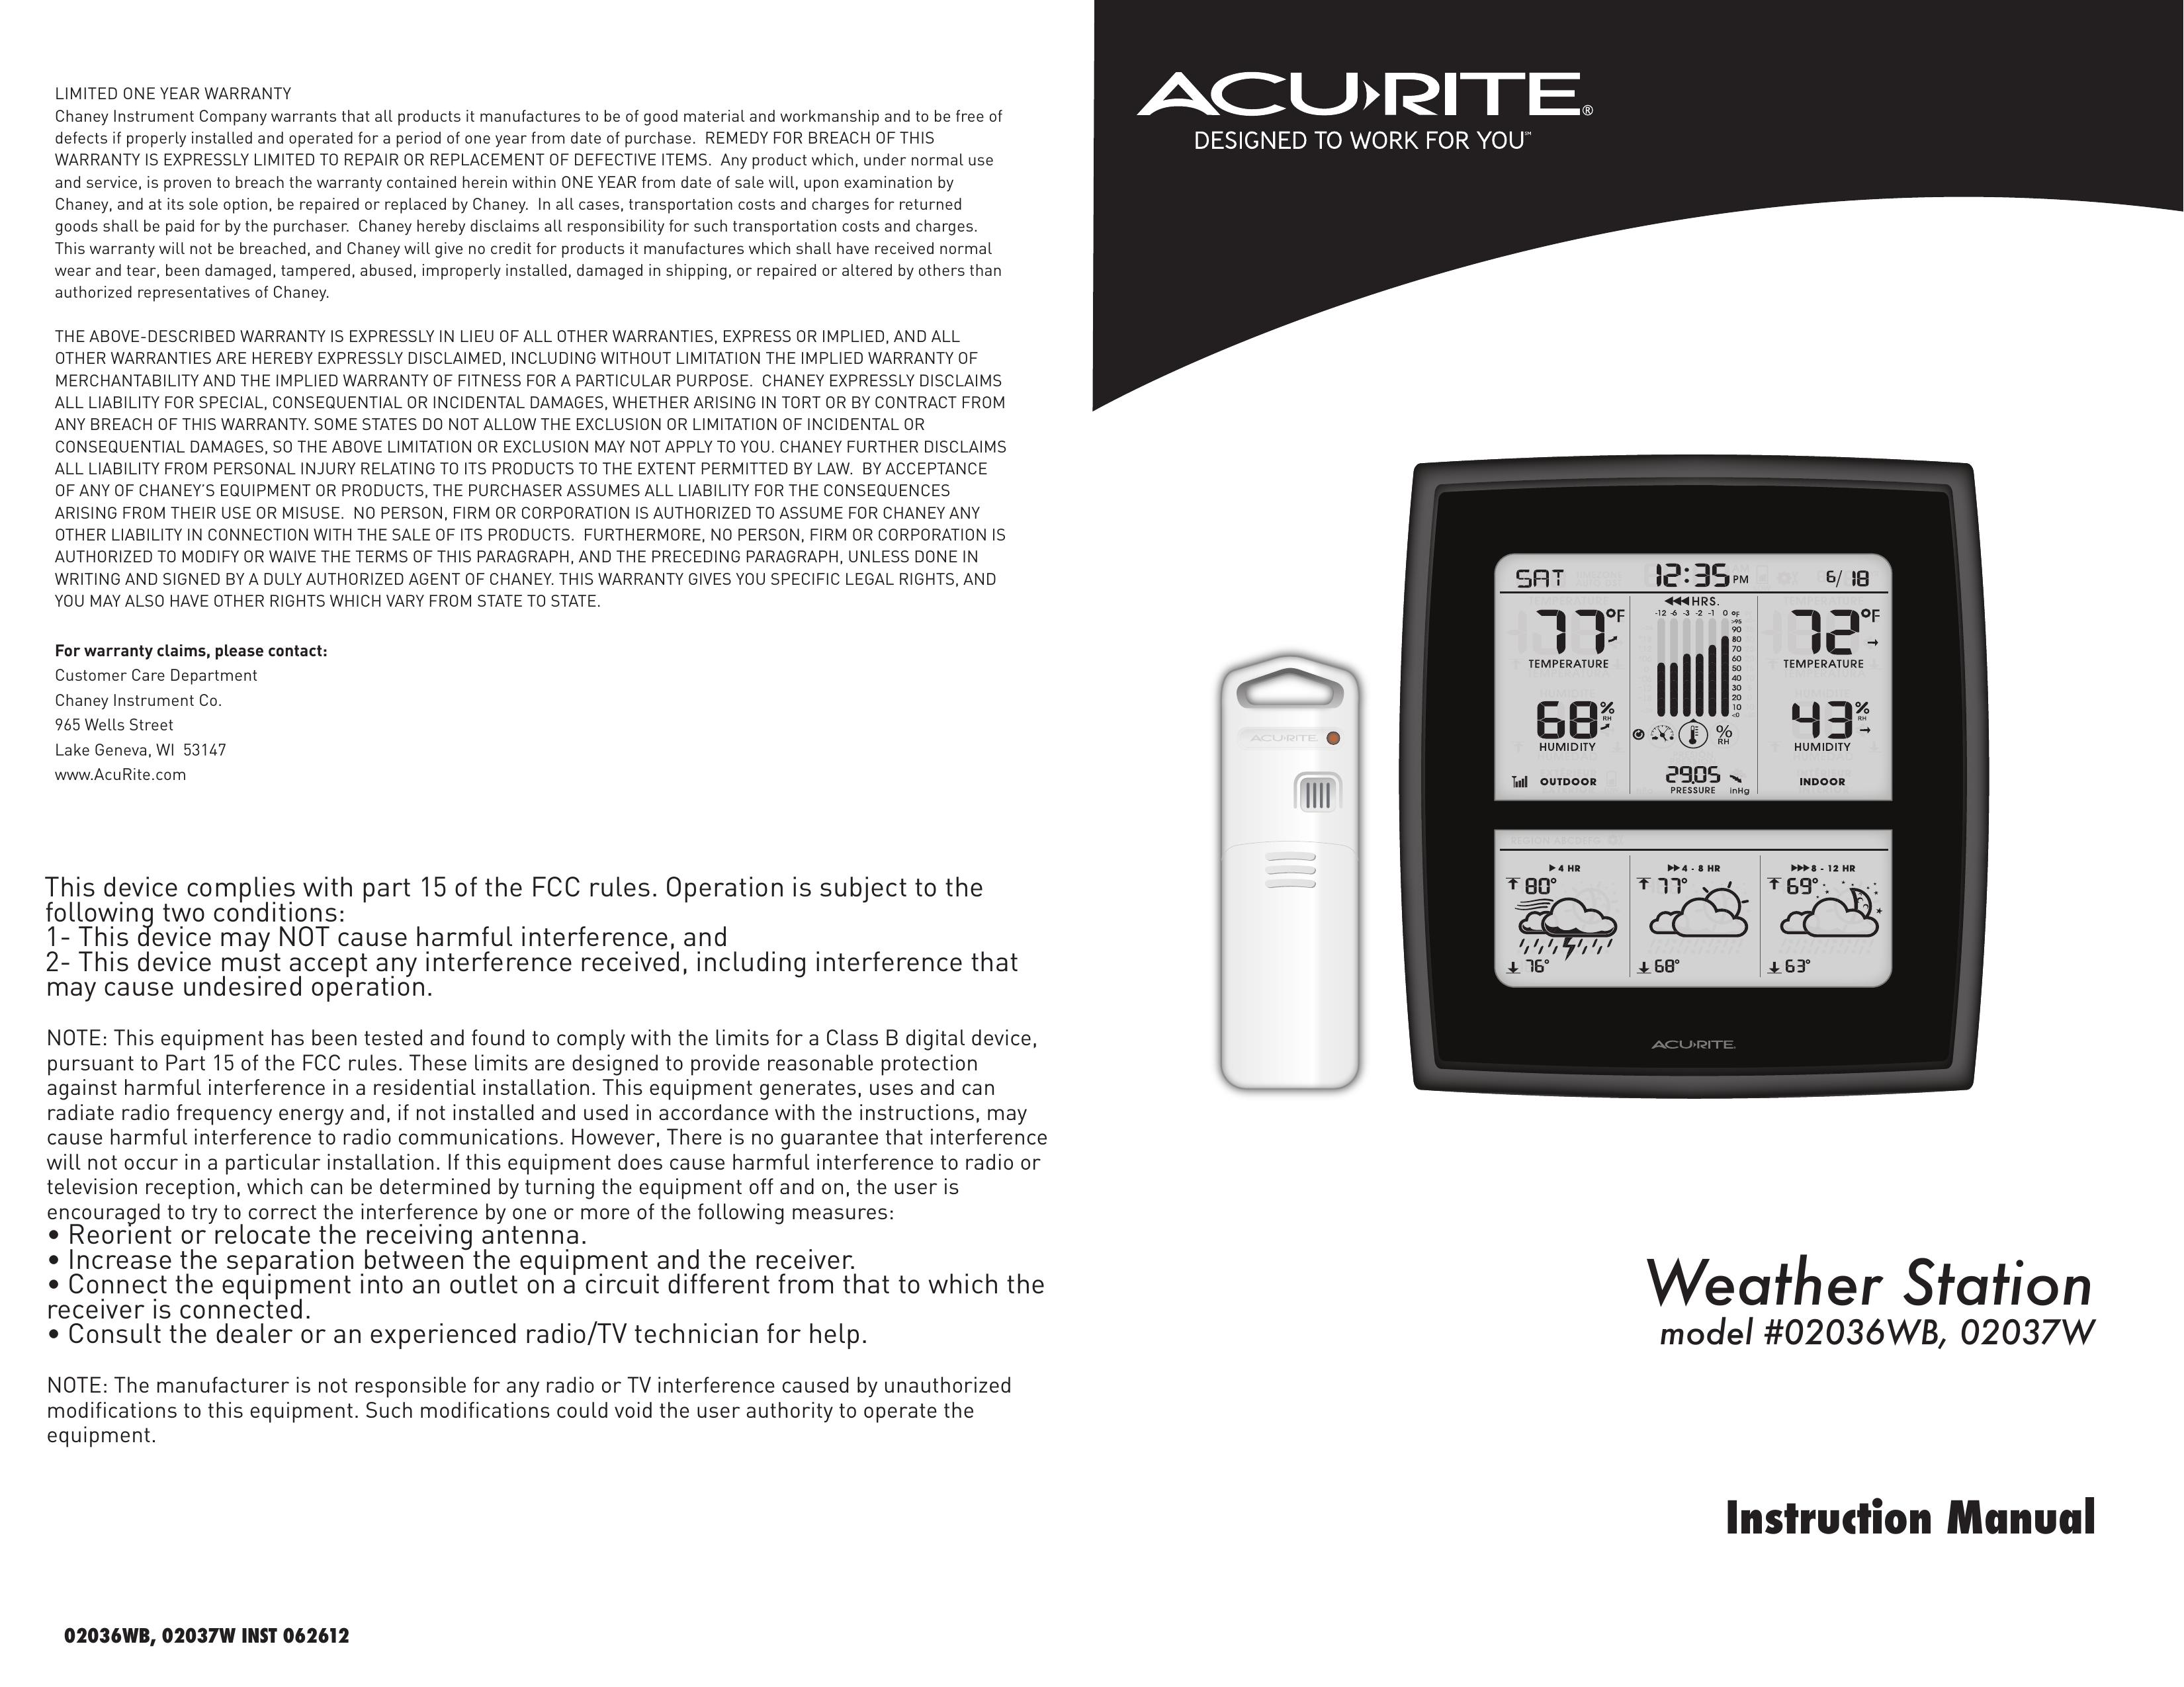 Acu-Rite 02037W Weather Radio User Manual